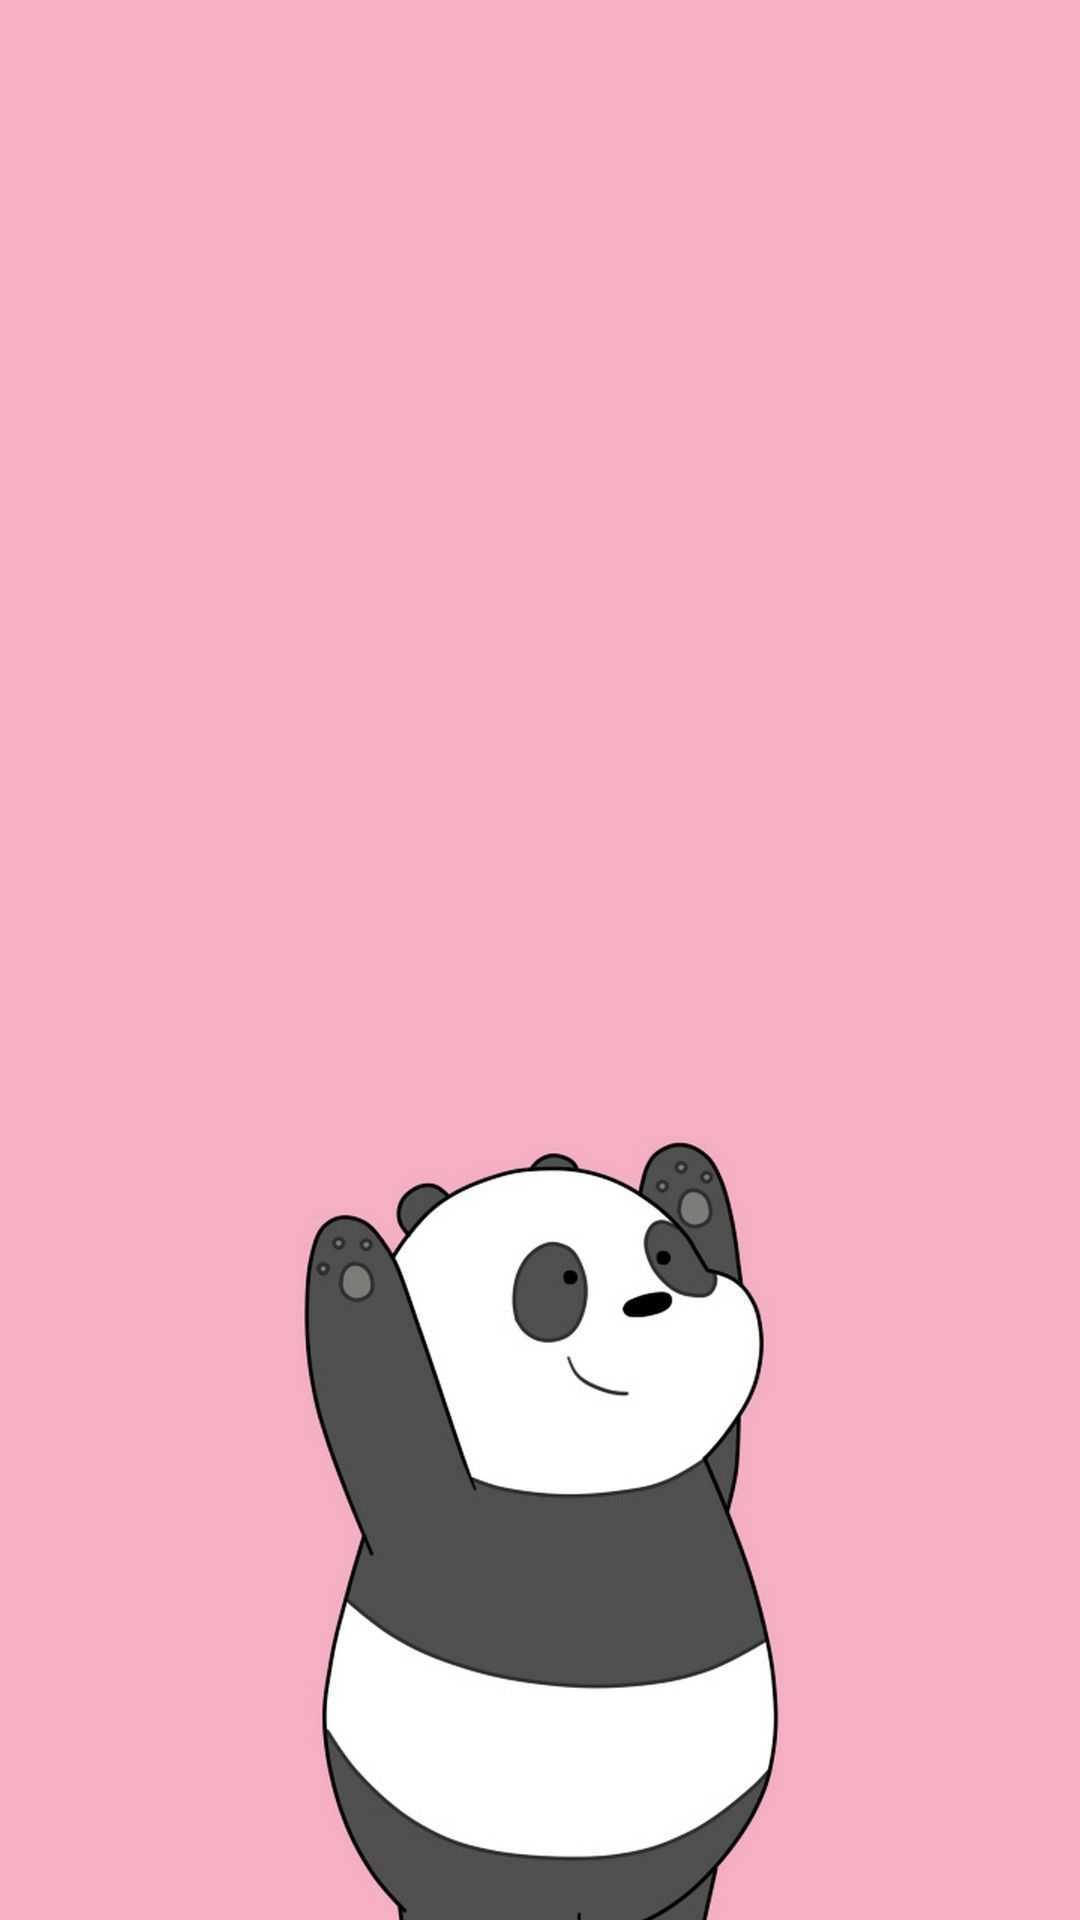 Cute panda wallpaper Vectors & Illustrations for Free Download | Freepik